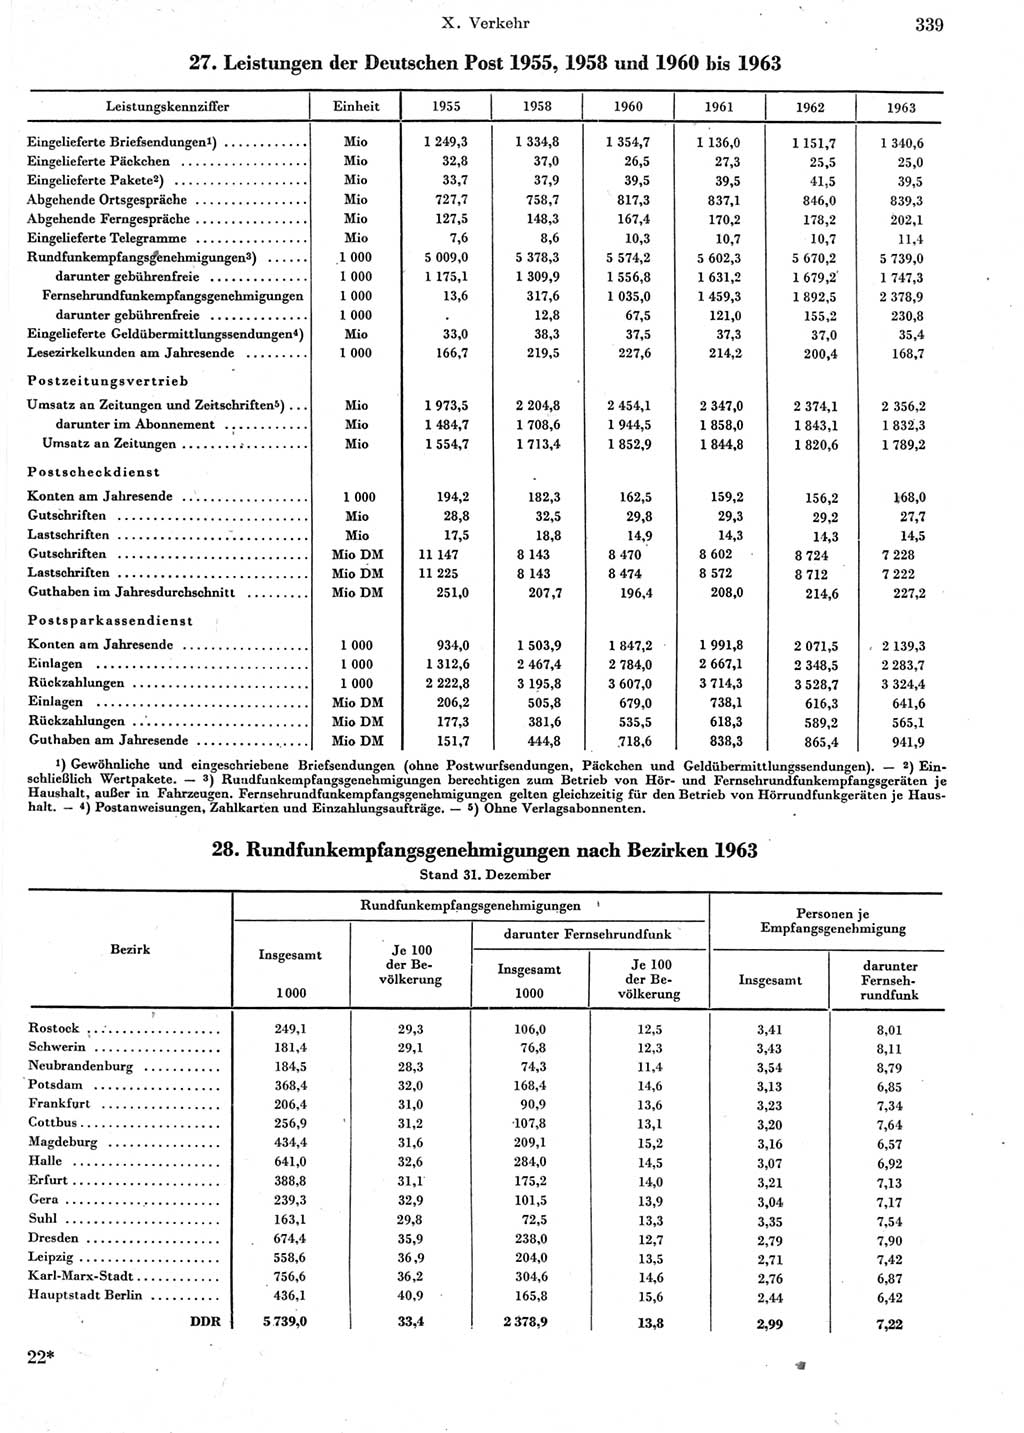 Statistisches Jahrbuch der Deutschen Demokratischen Republik (DDR) 1964, Seite 339 (Stat. Jb. DDR 1964, S. 339)